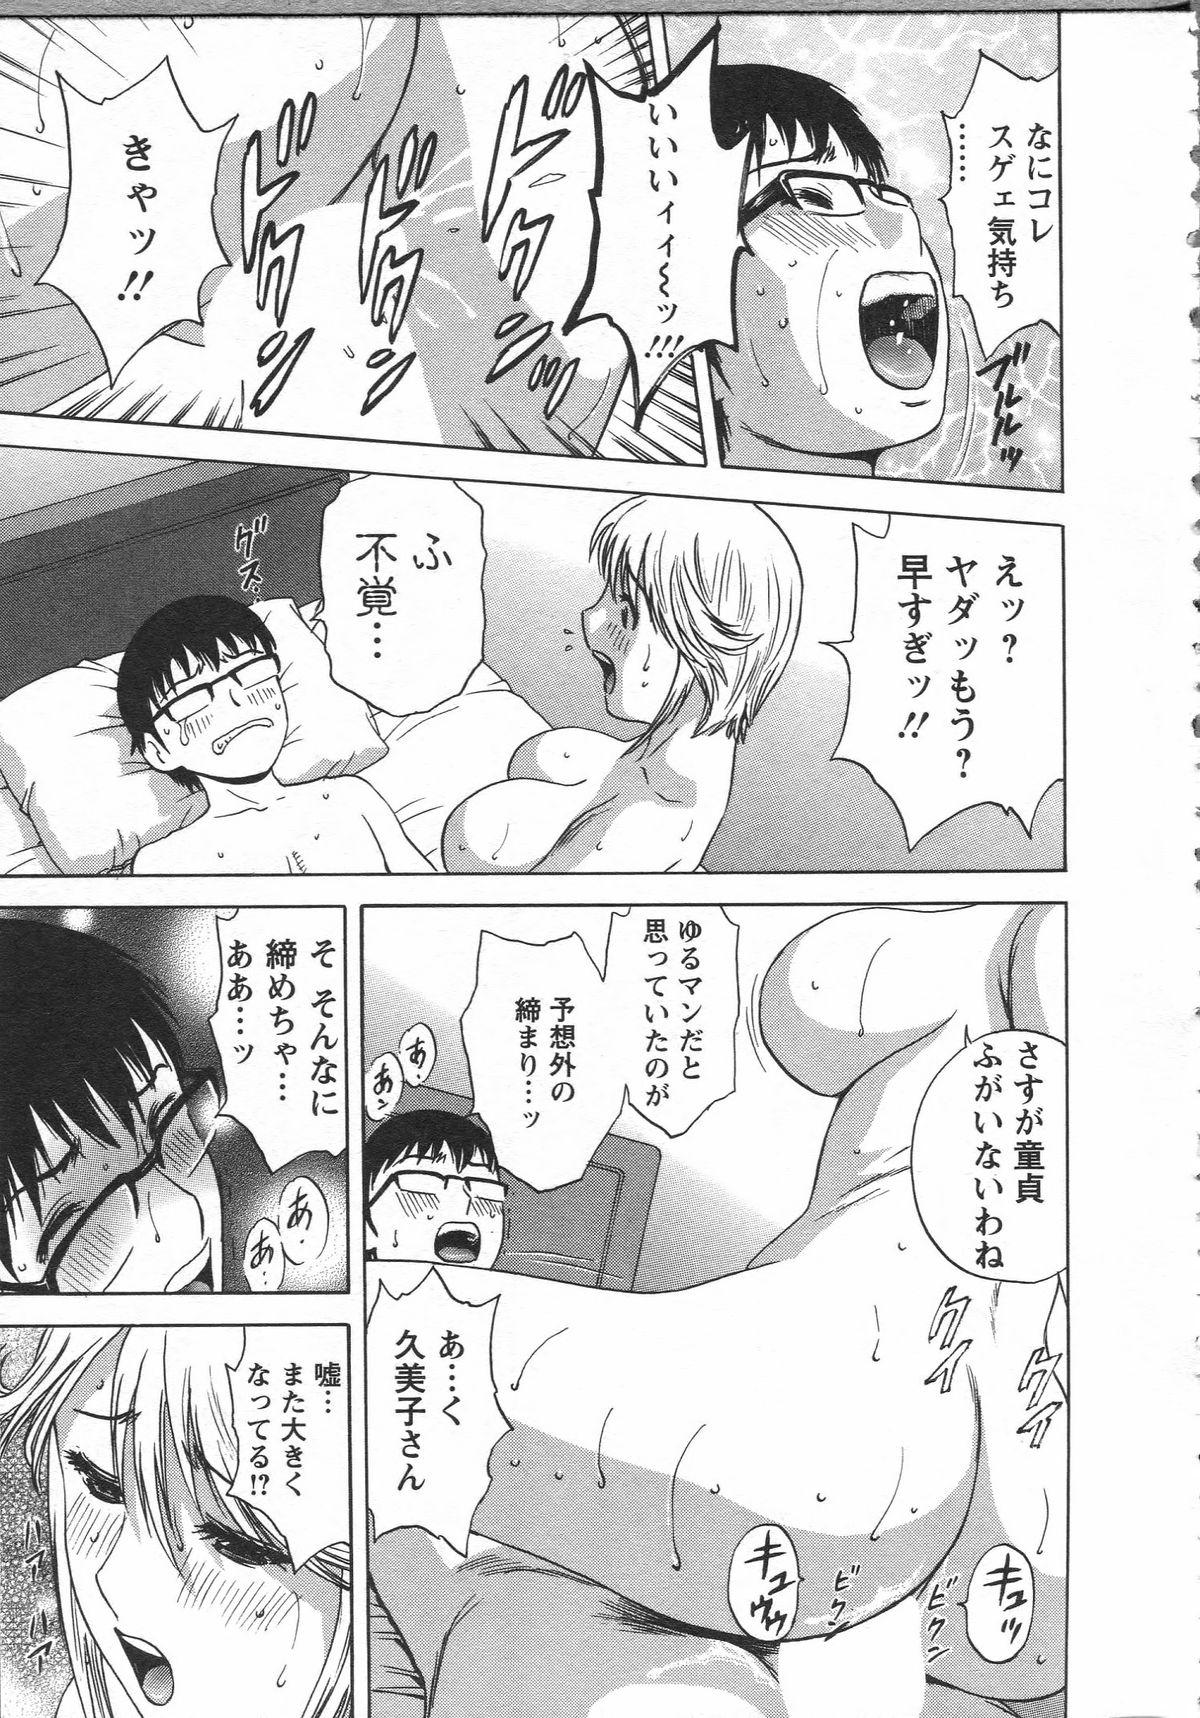 Manga no youna Hitozuma to no Hibi - Days with Married Women such as Comics. 38